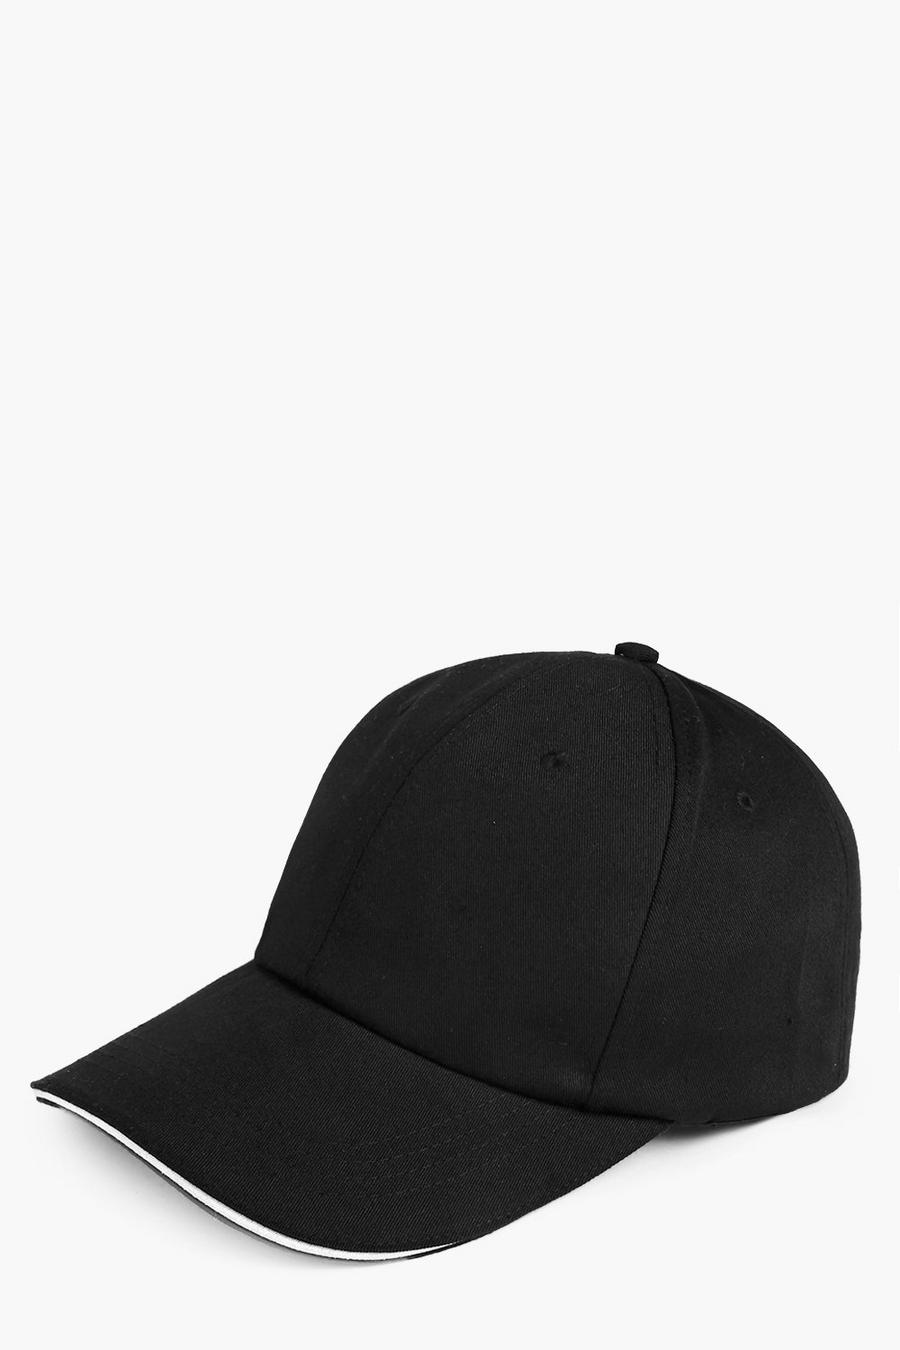 שחור nero כובע ארין חלק